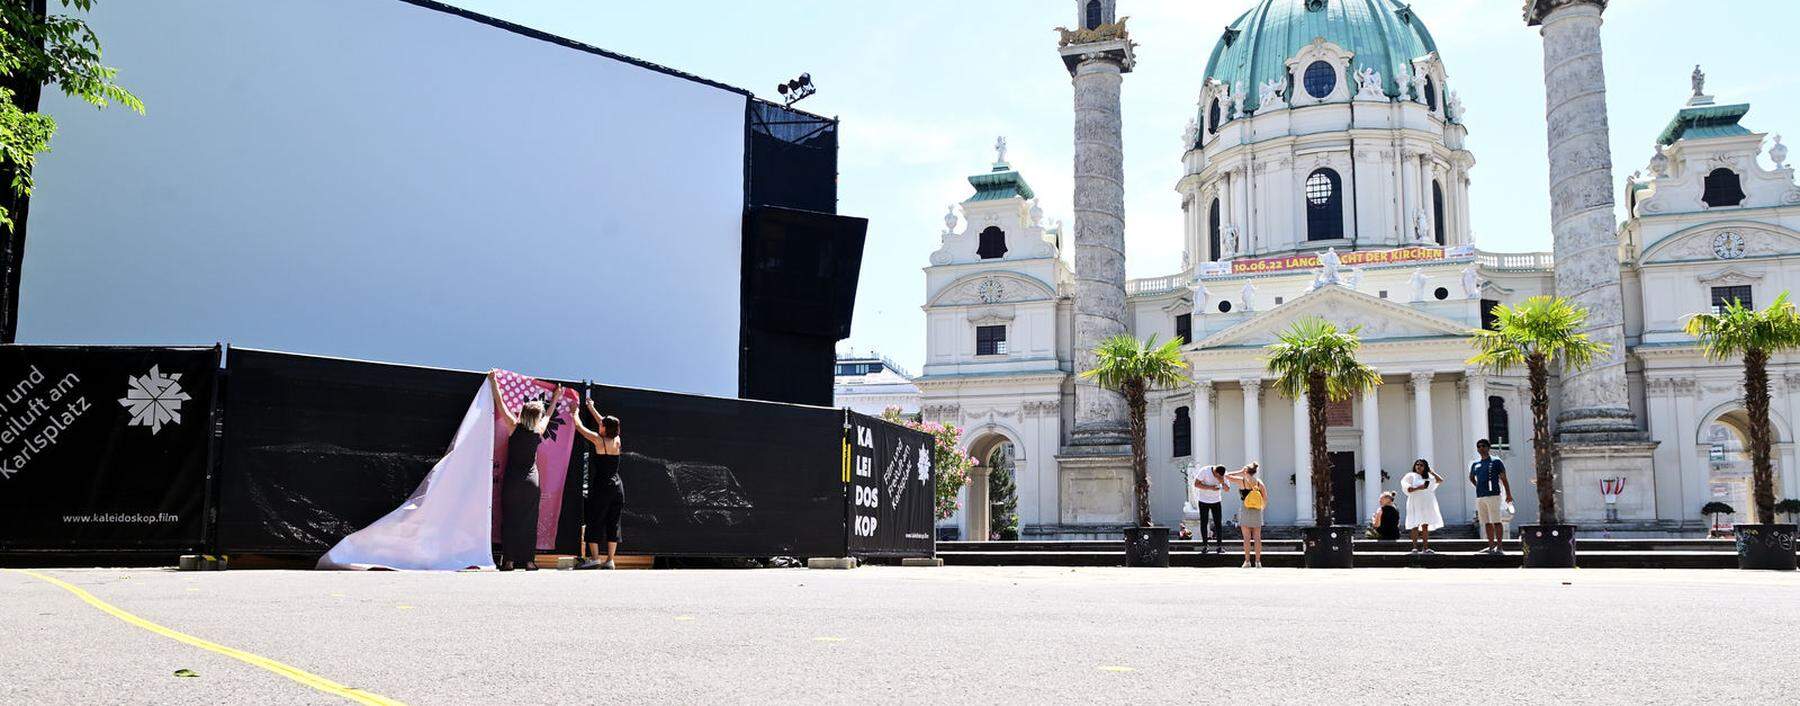 Seit Freitag ist der Karlsplatz wieder Schauplatz für das Filmfest Kaleidoskop. 